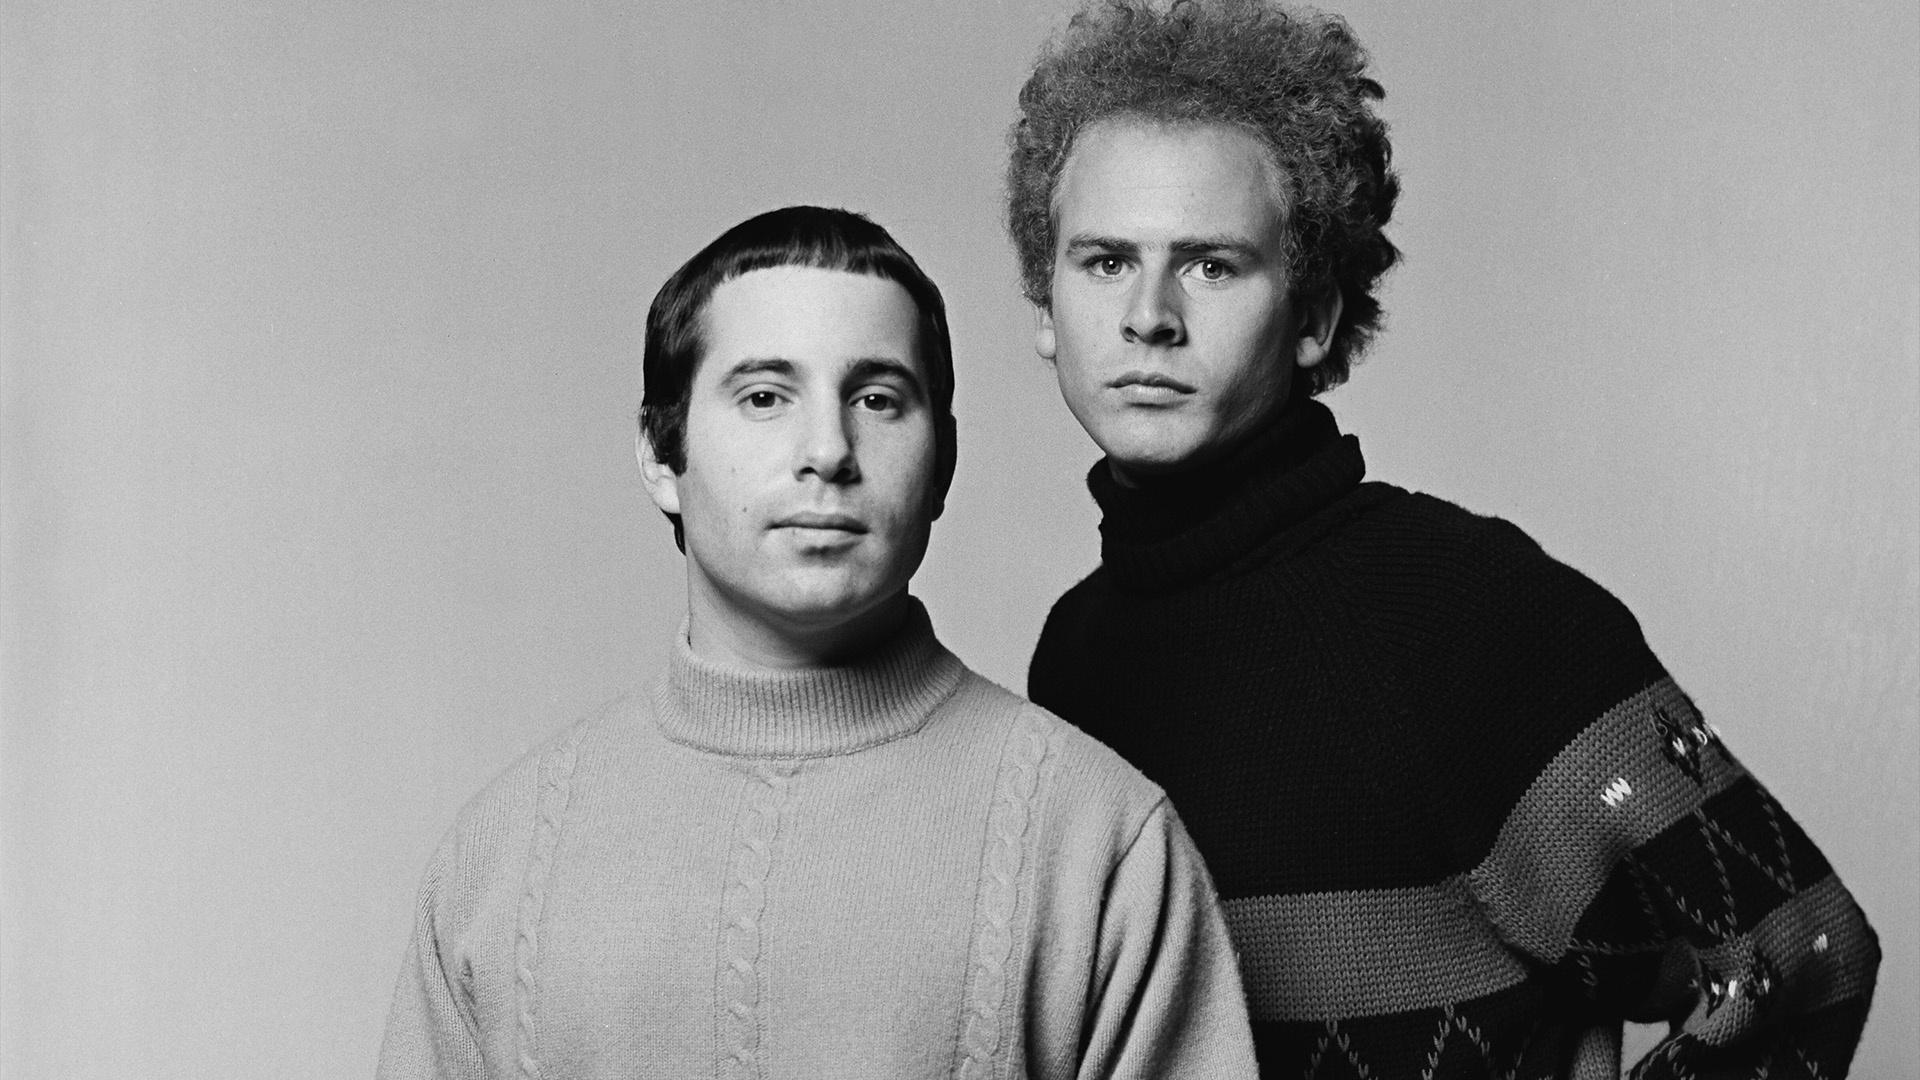 Simon & Garfunkel: The Concert in Central Park - Extras | Cascade PBS